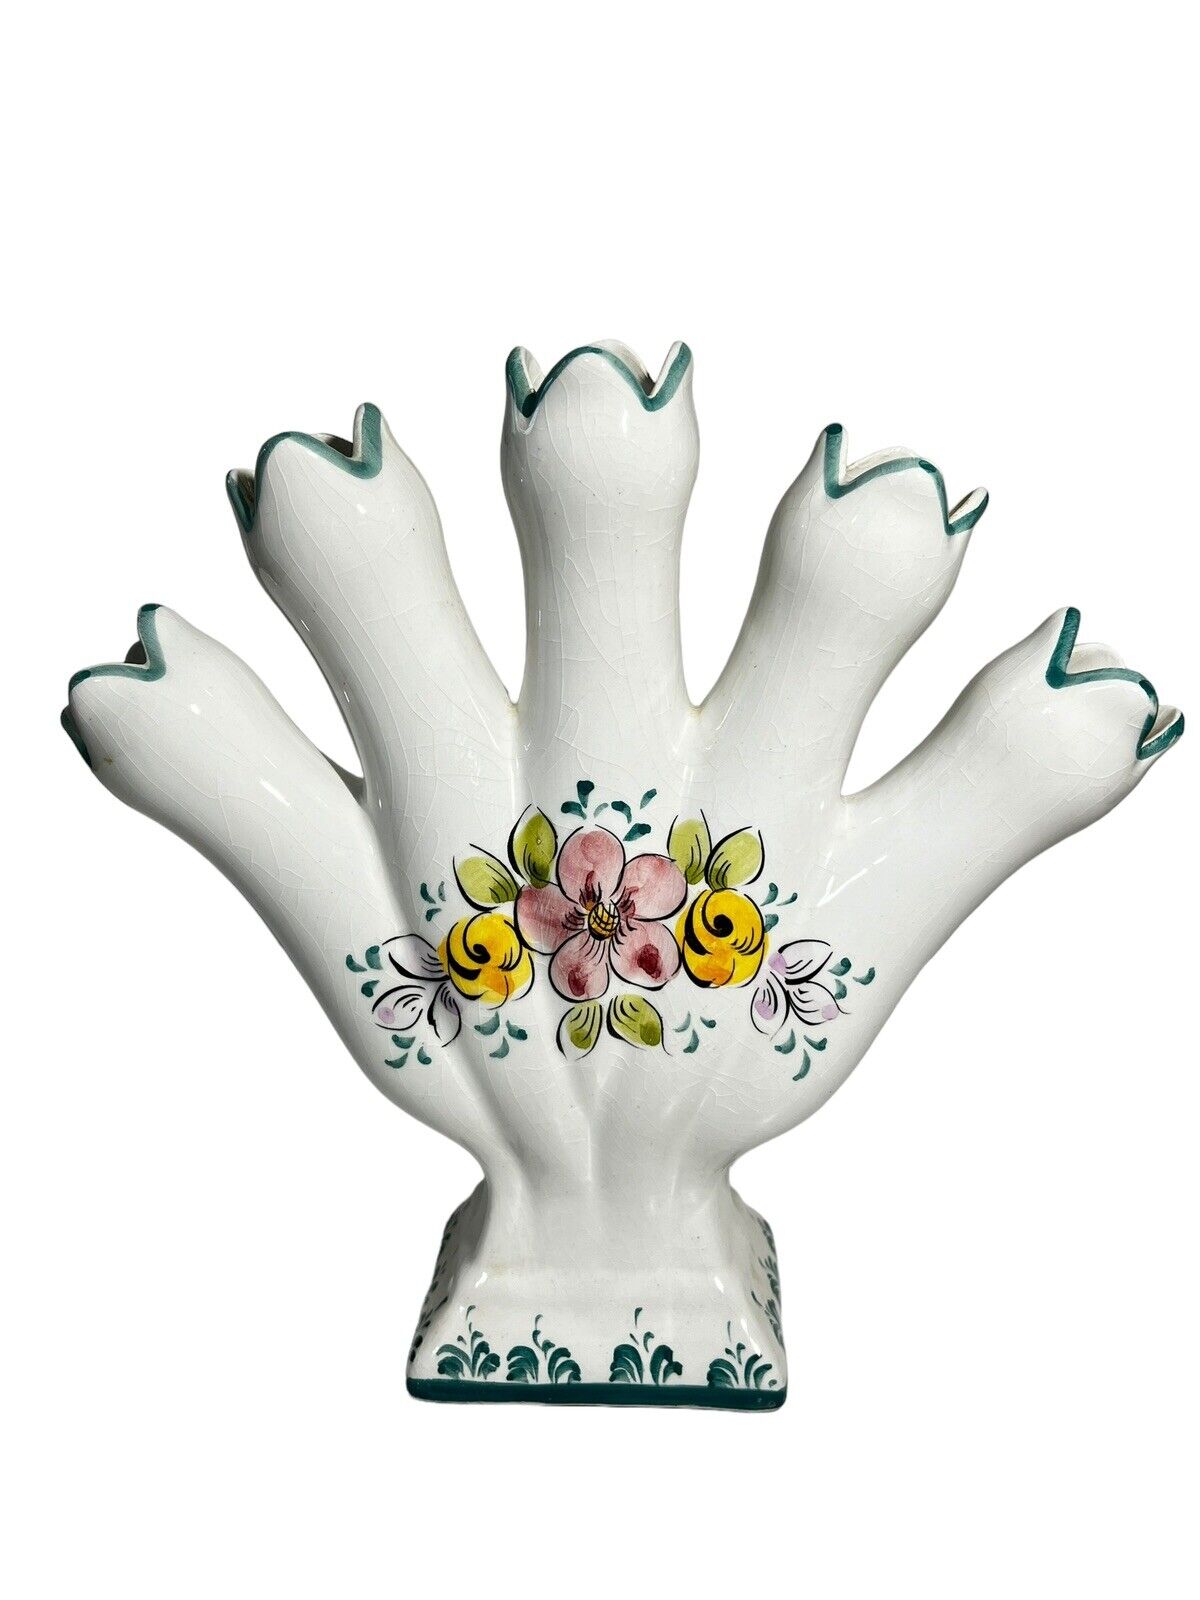 Vintage Elpa Alcobaca Portugal Five Finger Porcelain Tulipere Floral Vase 9”